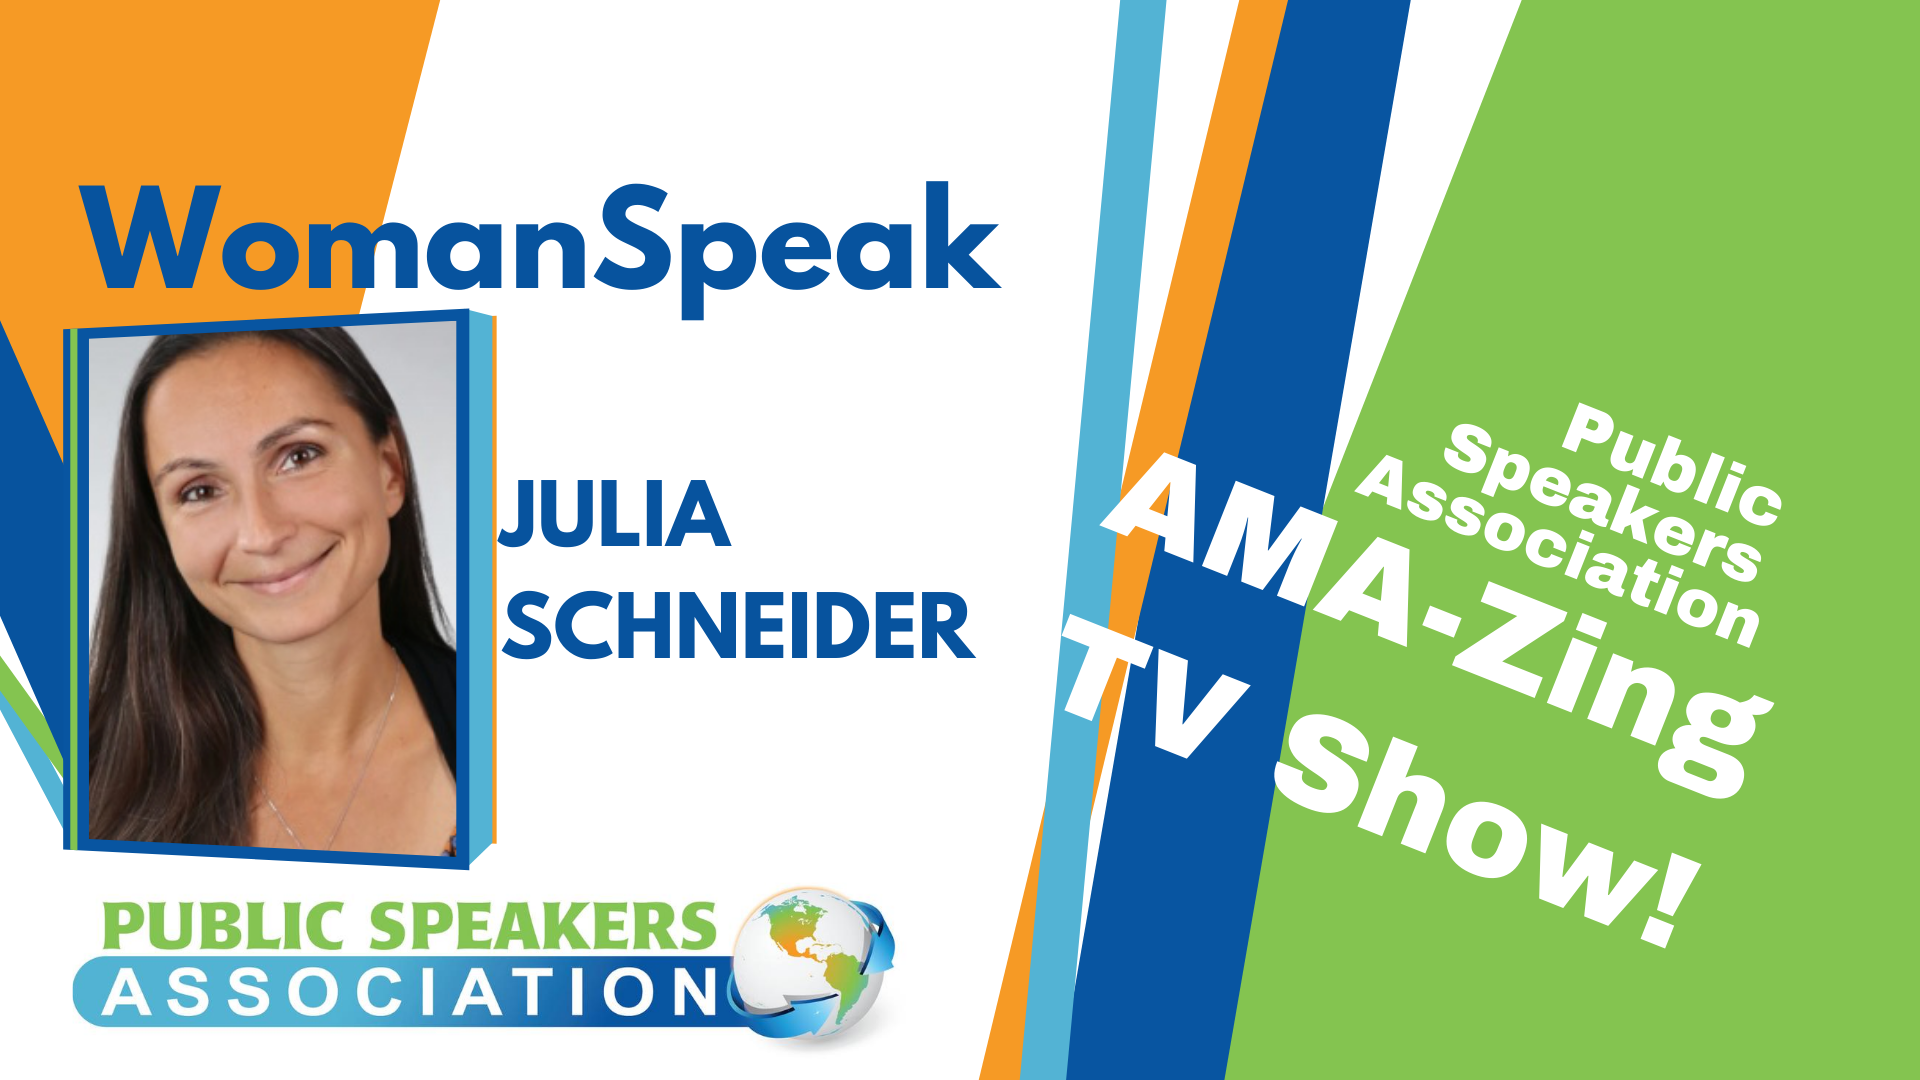 WomanSpeak – Julia Schneider